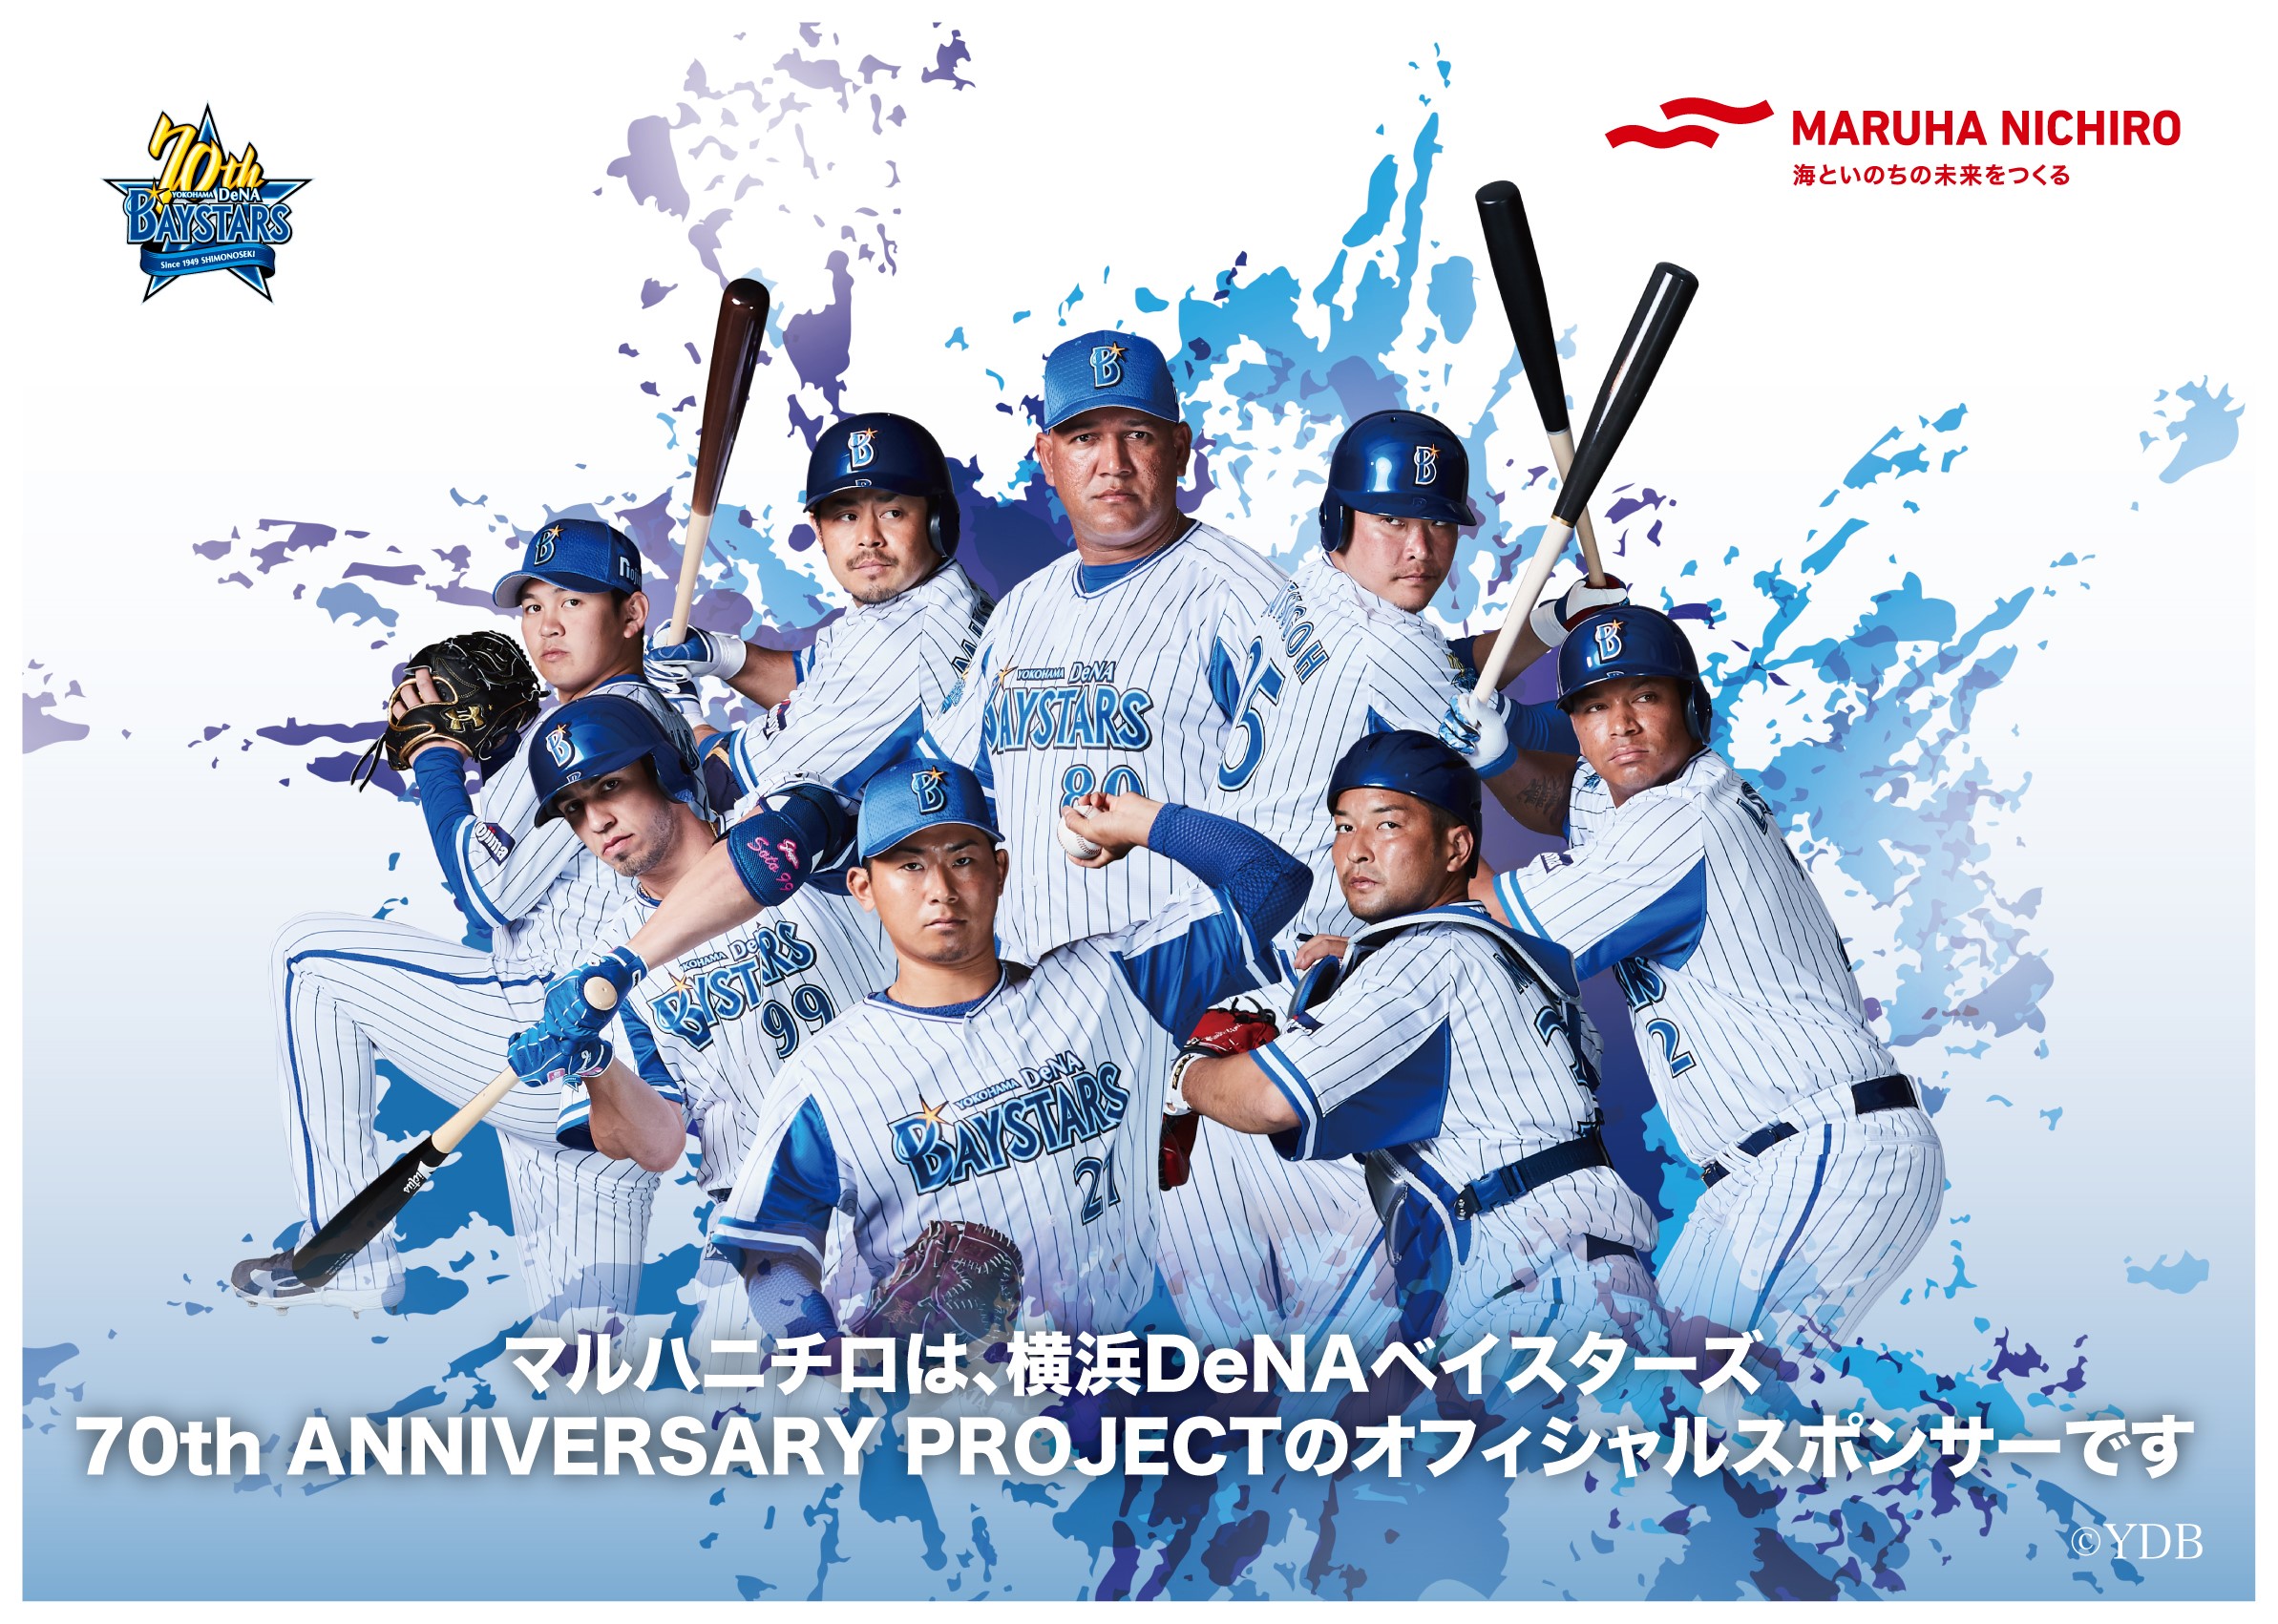 マルハニチロ 横浜denaベイスターズ70thプロジェクト All Blue Inc 株式会社オールブルー ブランディング事業 コンテンツ制作 インバウンド及び海外進出支援